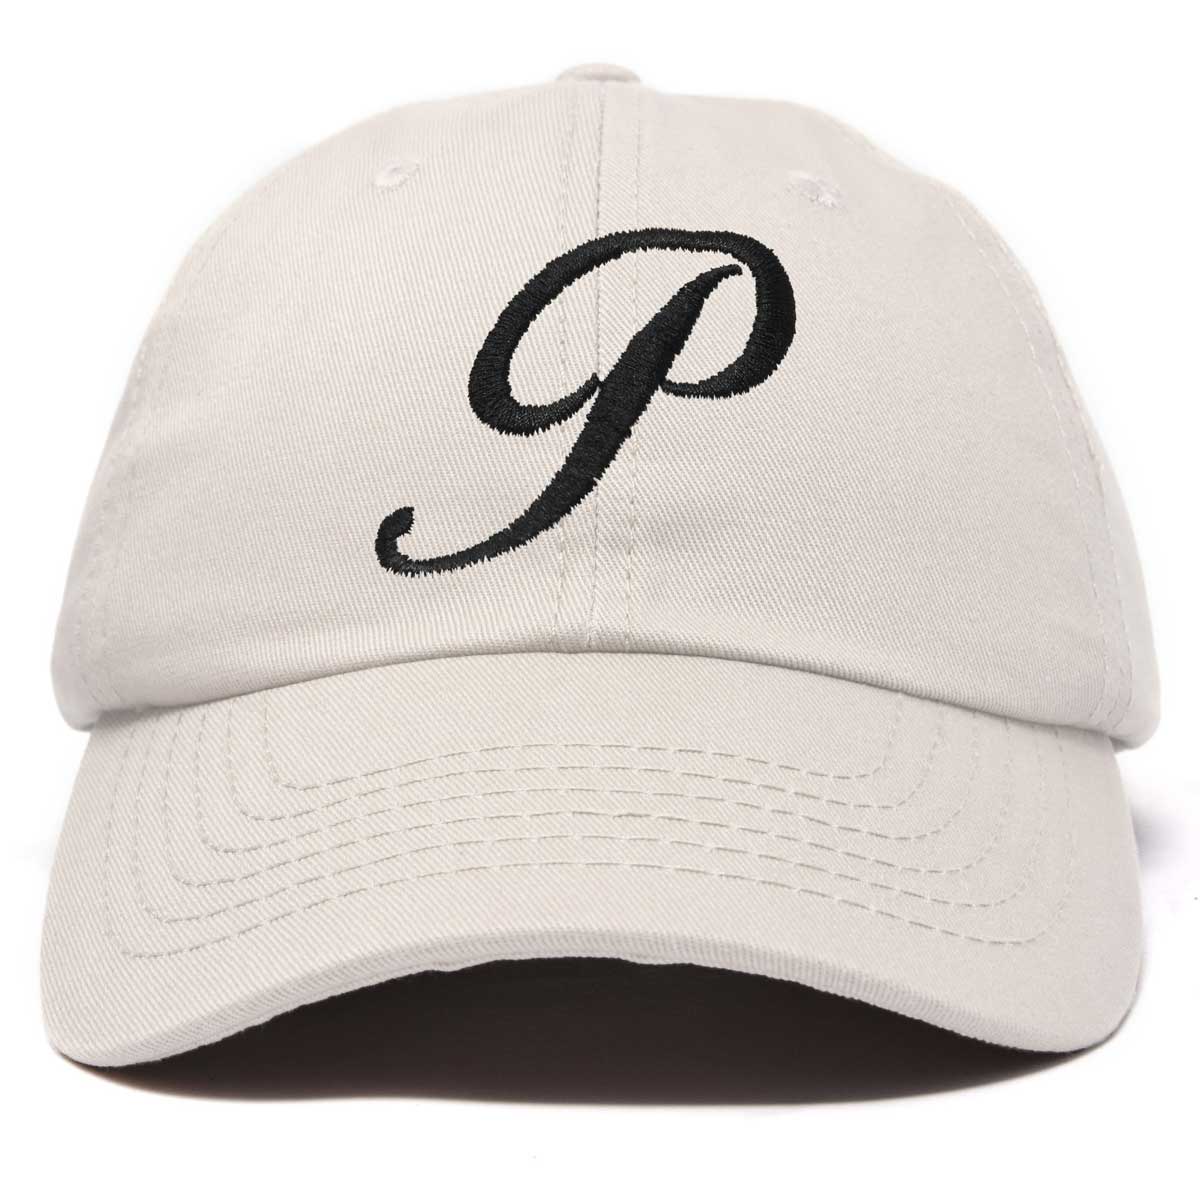 Dalix Initial Letter P Hat